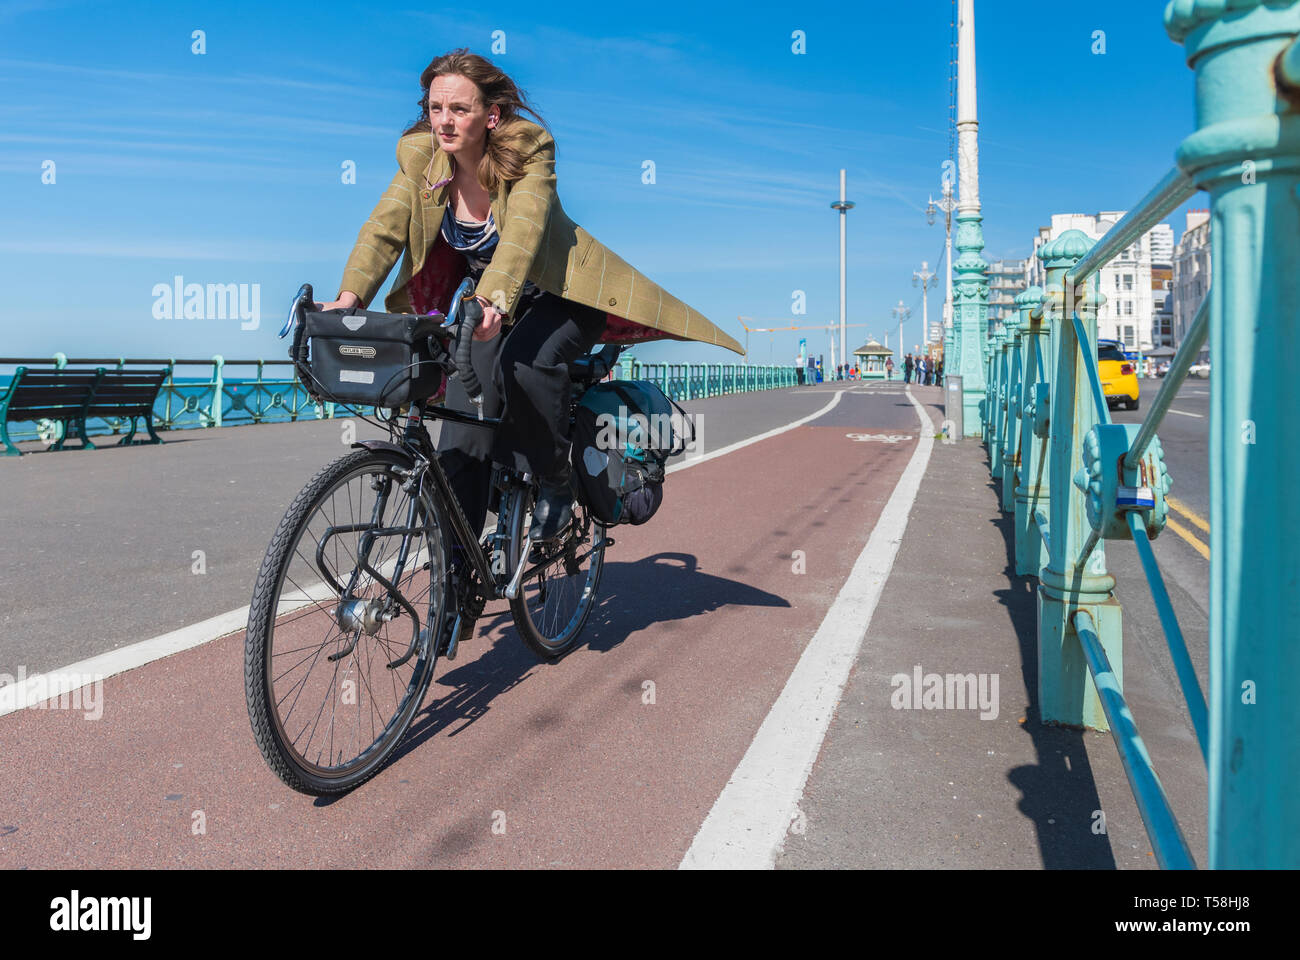 Woman in 20s'habiller élégamment à vélo sur une piste cyclable à Brighton, East Sussex, Angleterre, Royaume-Uni. Femme intelligente sur piste cyclable. Banque D'Images